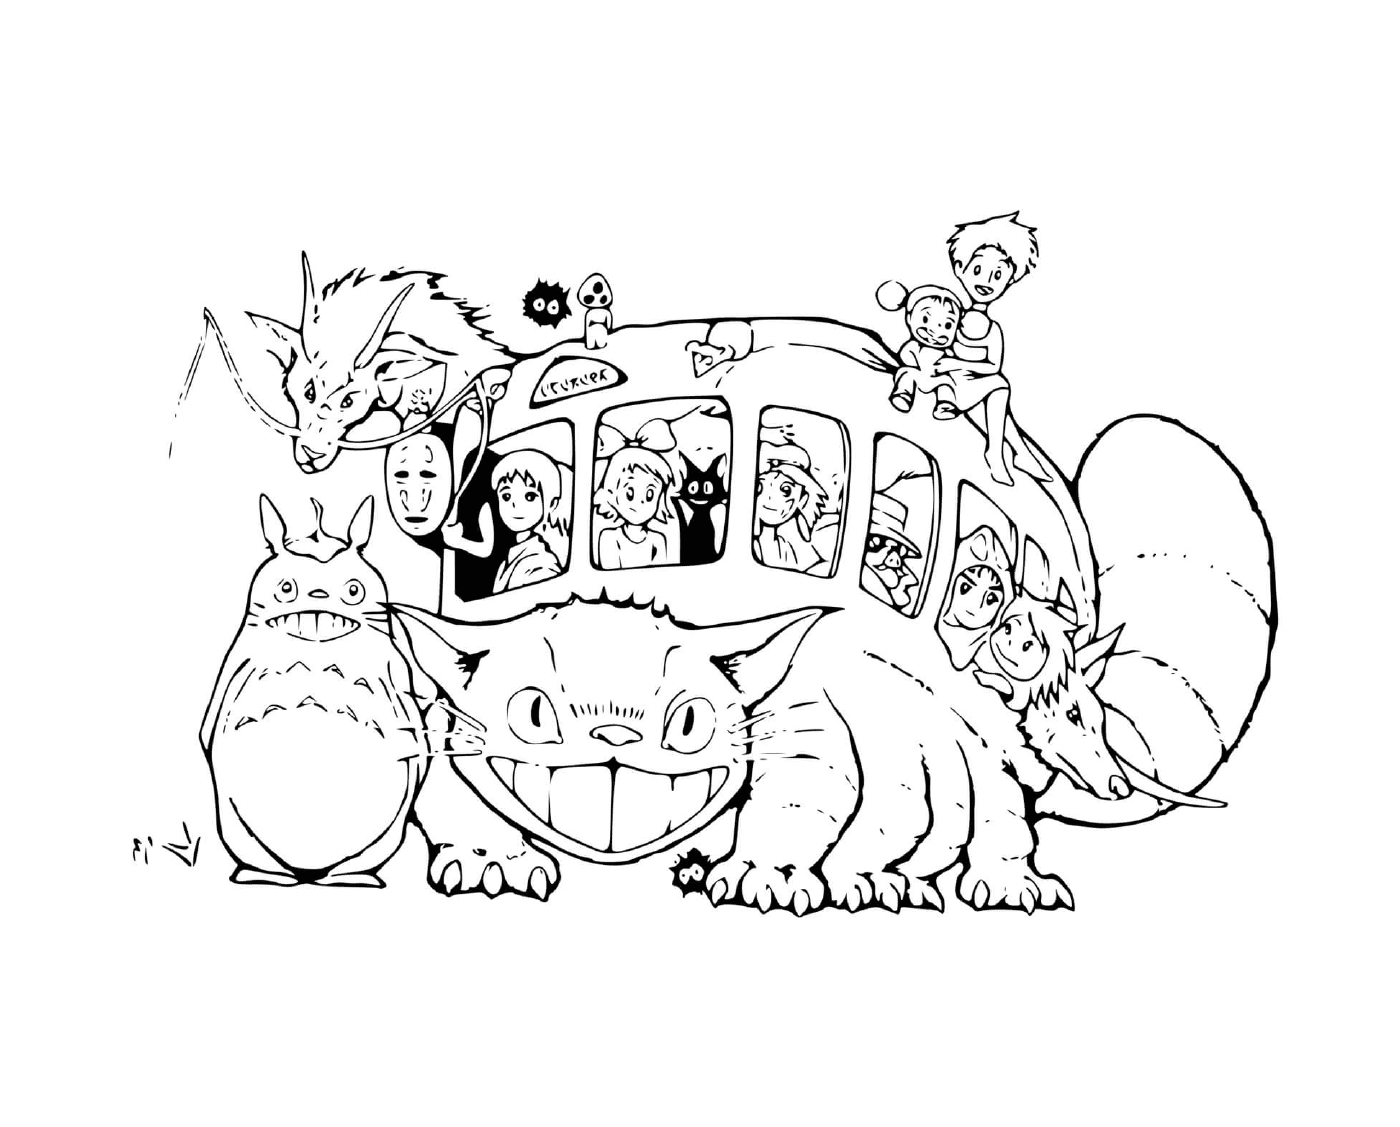  Katzenbus von Studio Ghibli 